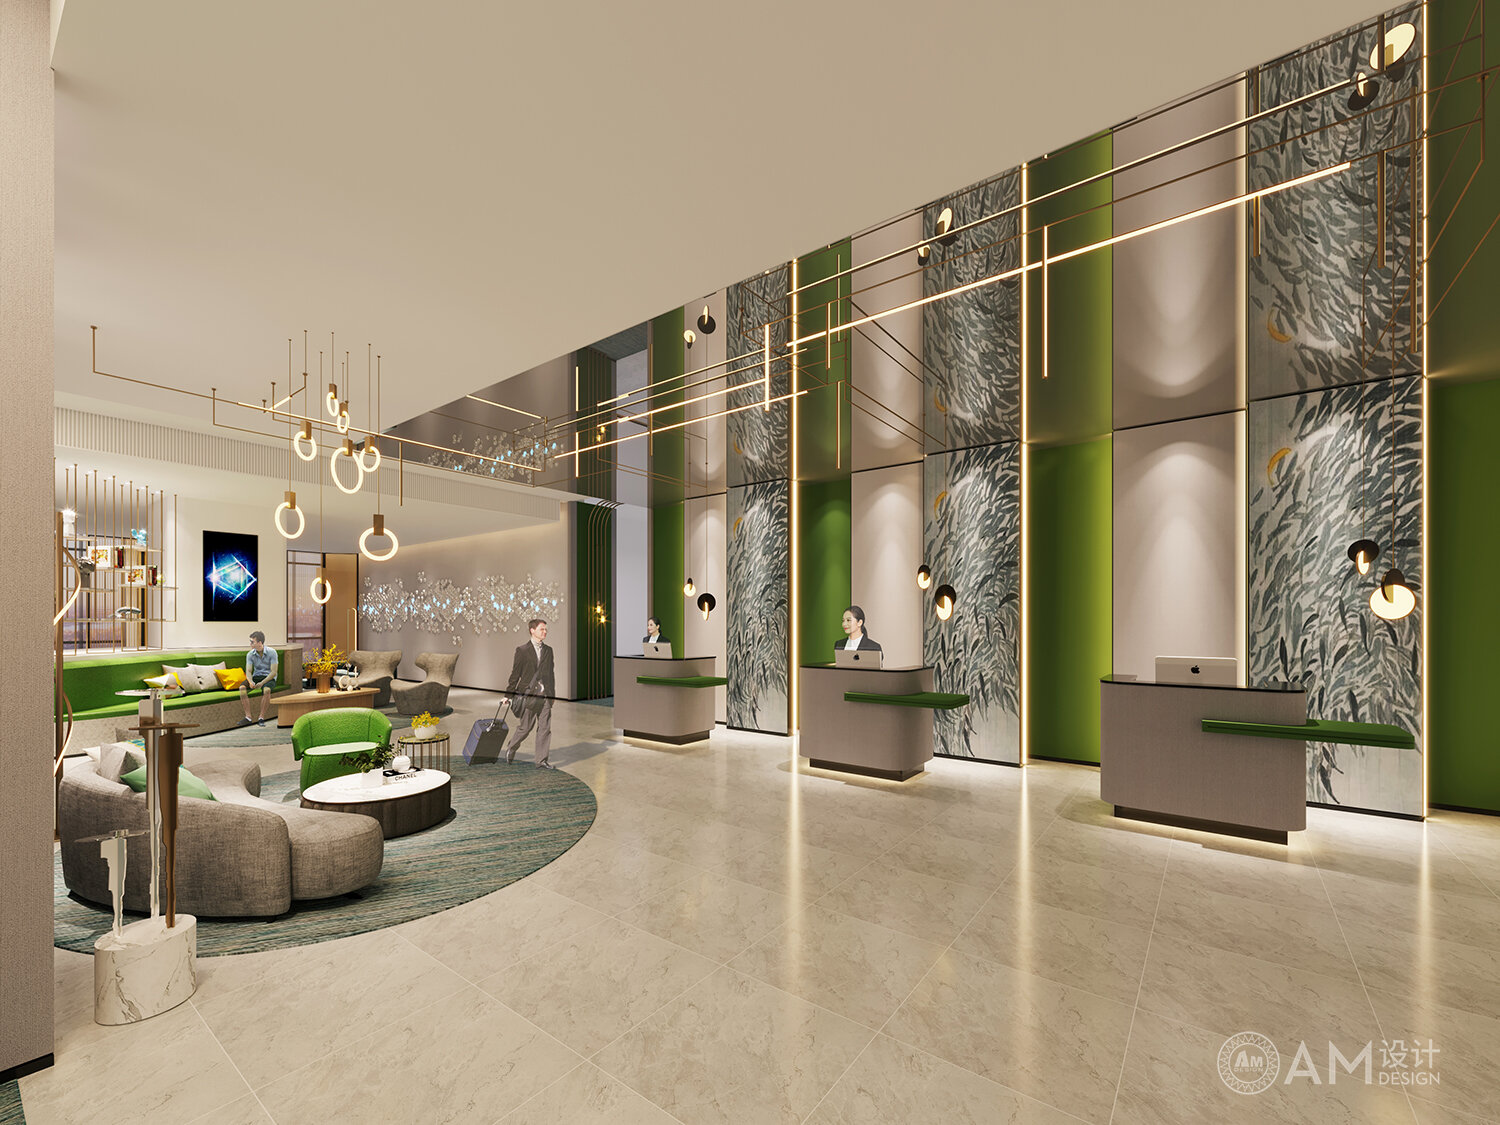 AM DESIGN | Weinan Hotel lobby & front desk design